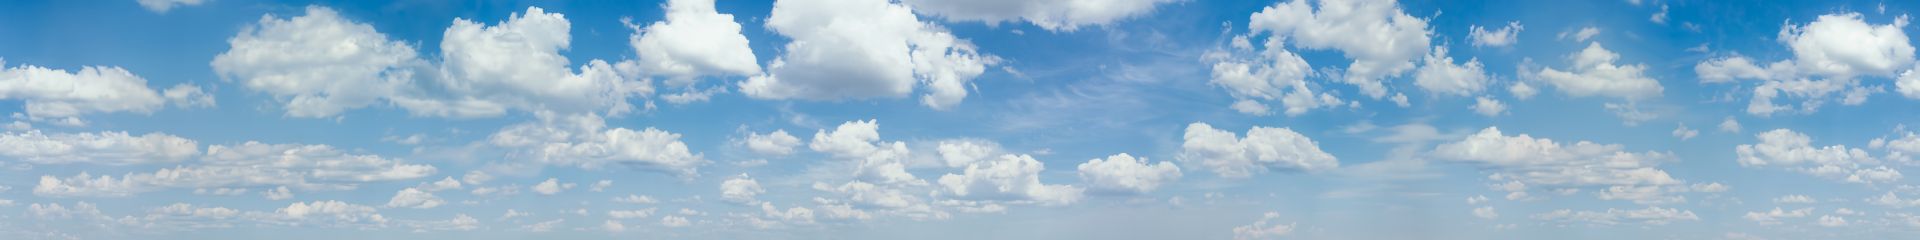 elriwa M4-H100-A - Hintergrundplatte aus PVC-Hartschaum 'Himmel mit Wolken', Höhe 100 cm, Bild A